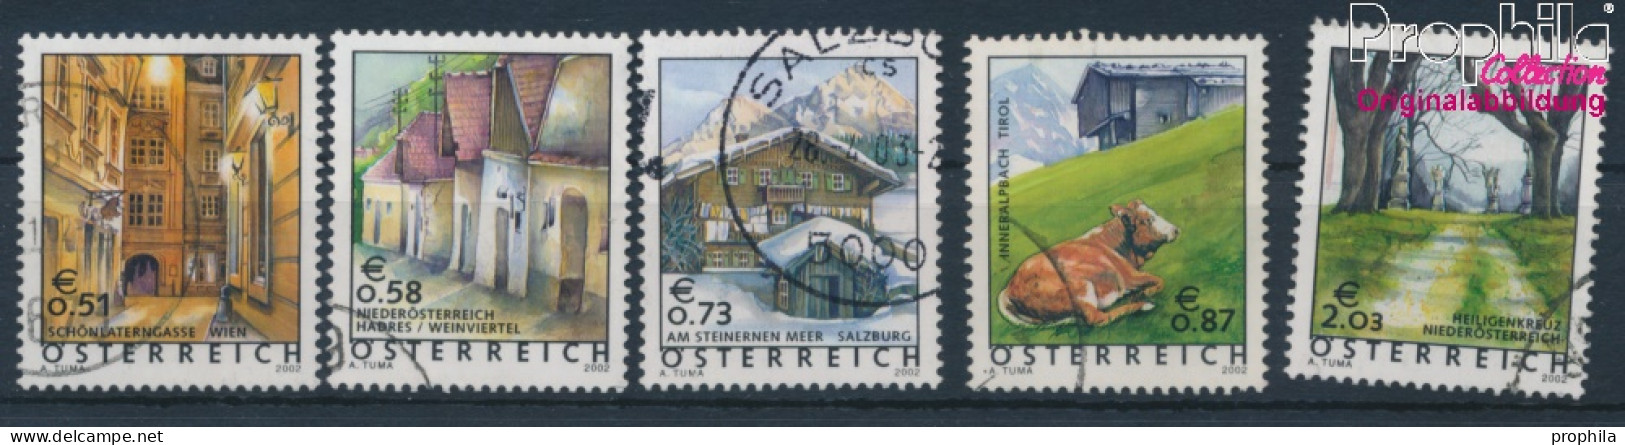 Österreich 2363-2367 (kompl.Ausg.) Gestempelt 2002 Freimarken (10404375 - Usati